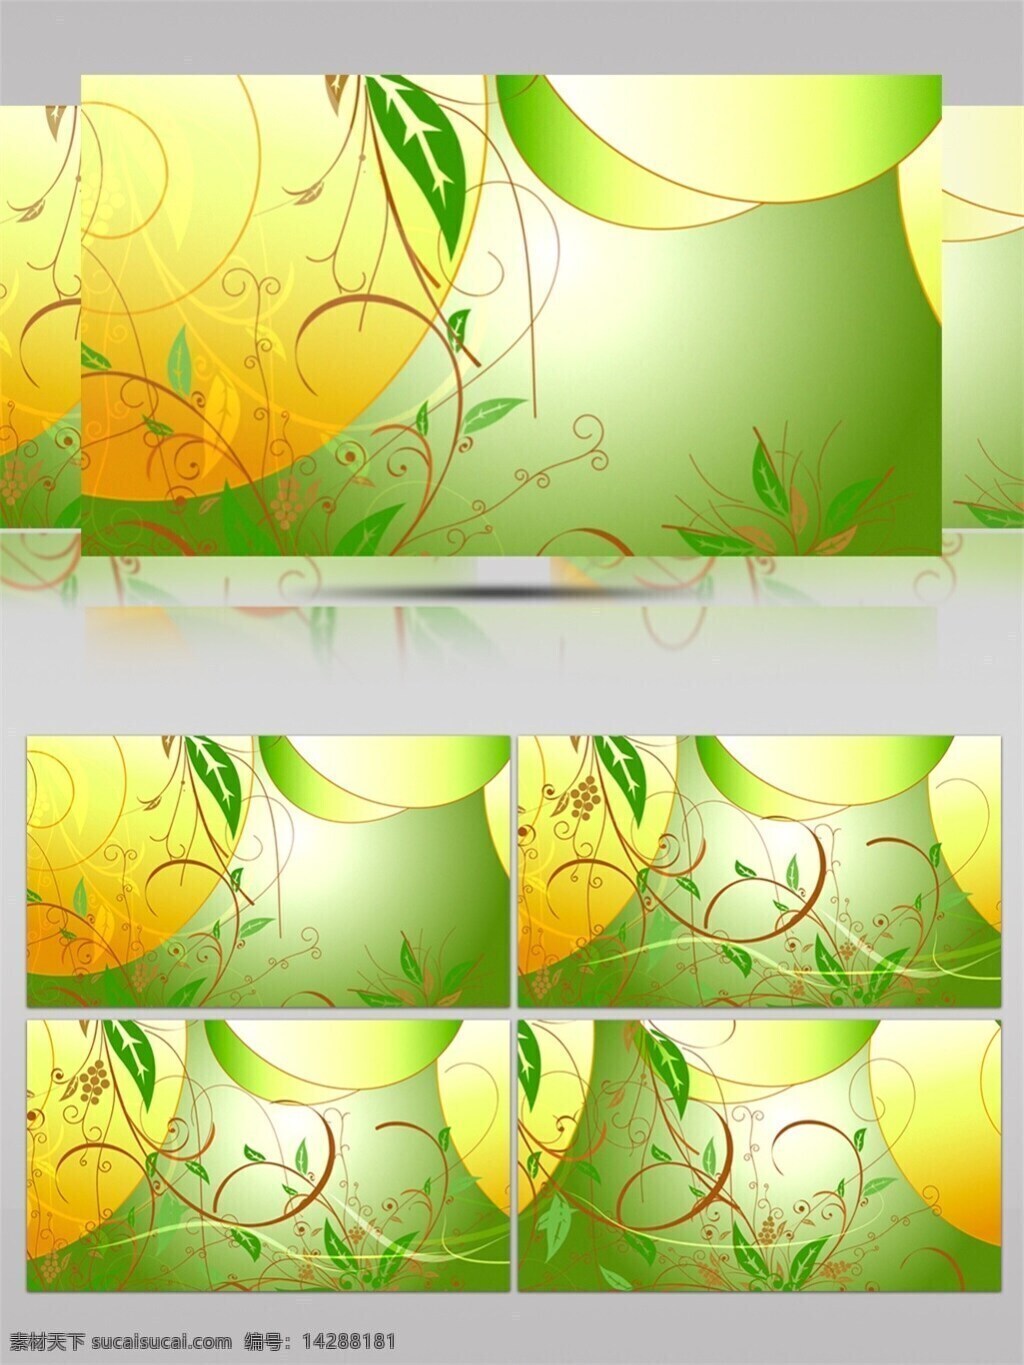 树苗 花 藤 高清 视频 唯美植物 小清新壁纸 装饰风格 动态展示 开绿色植物 植物图画